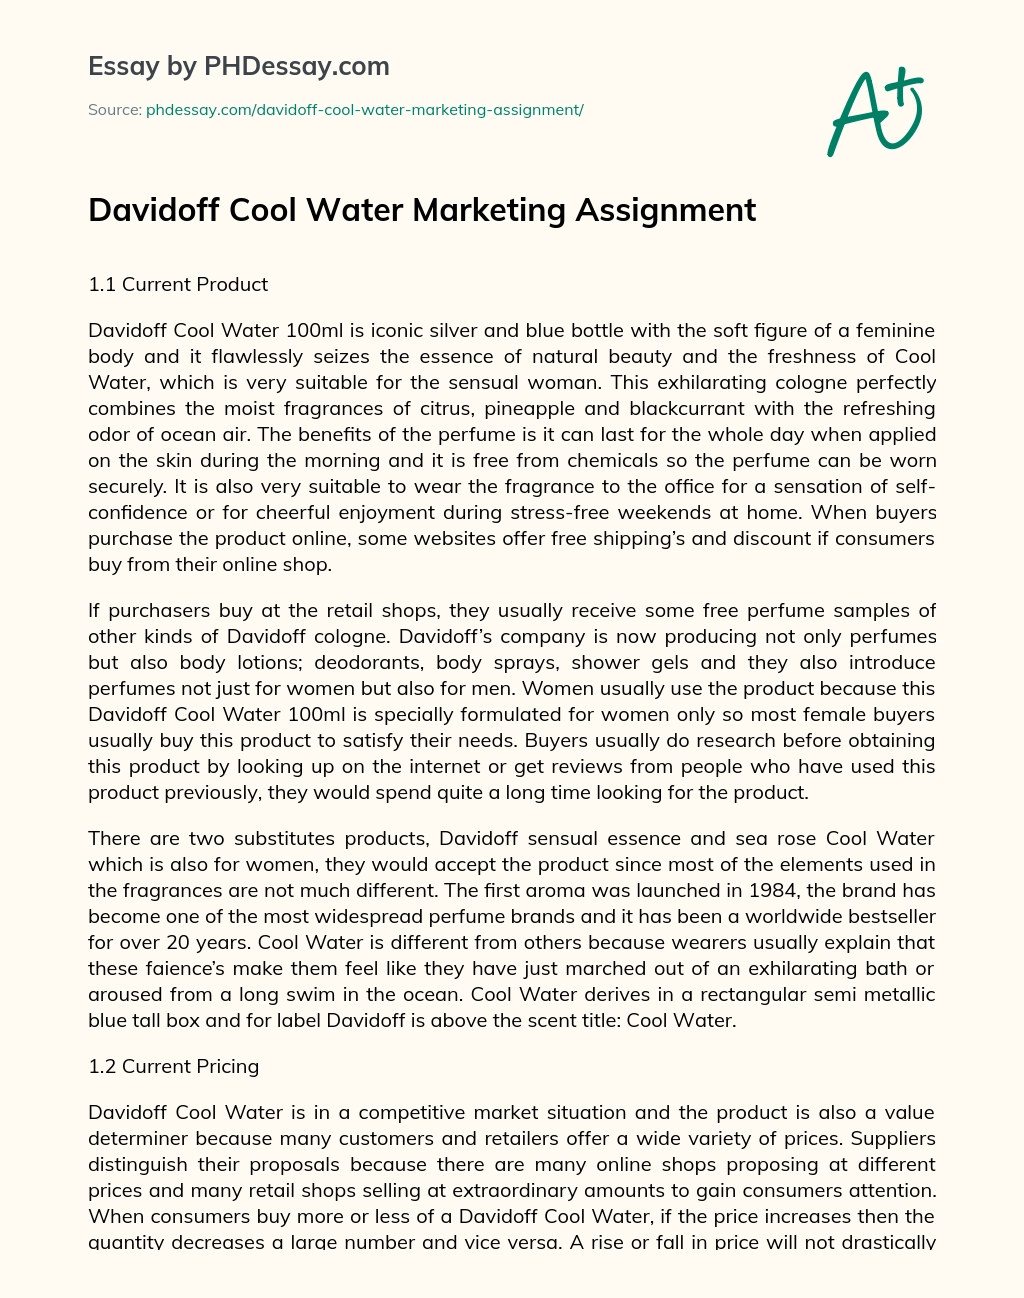 Davidoff Cool Water Marketing Assignment essay